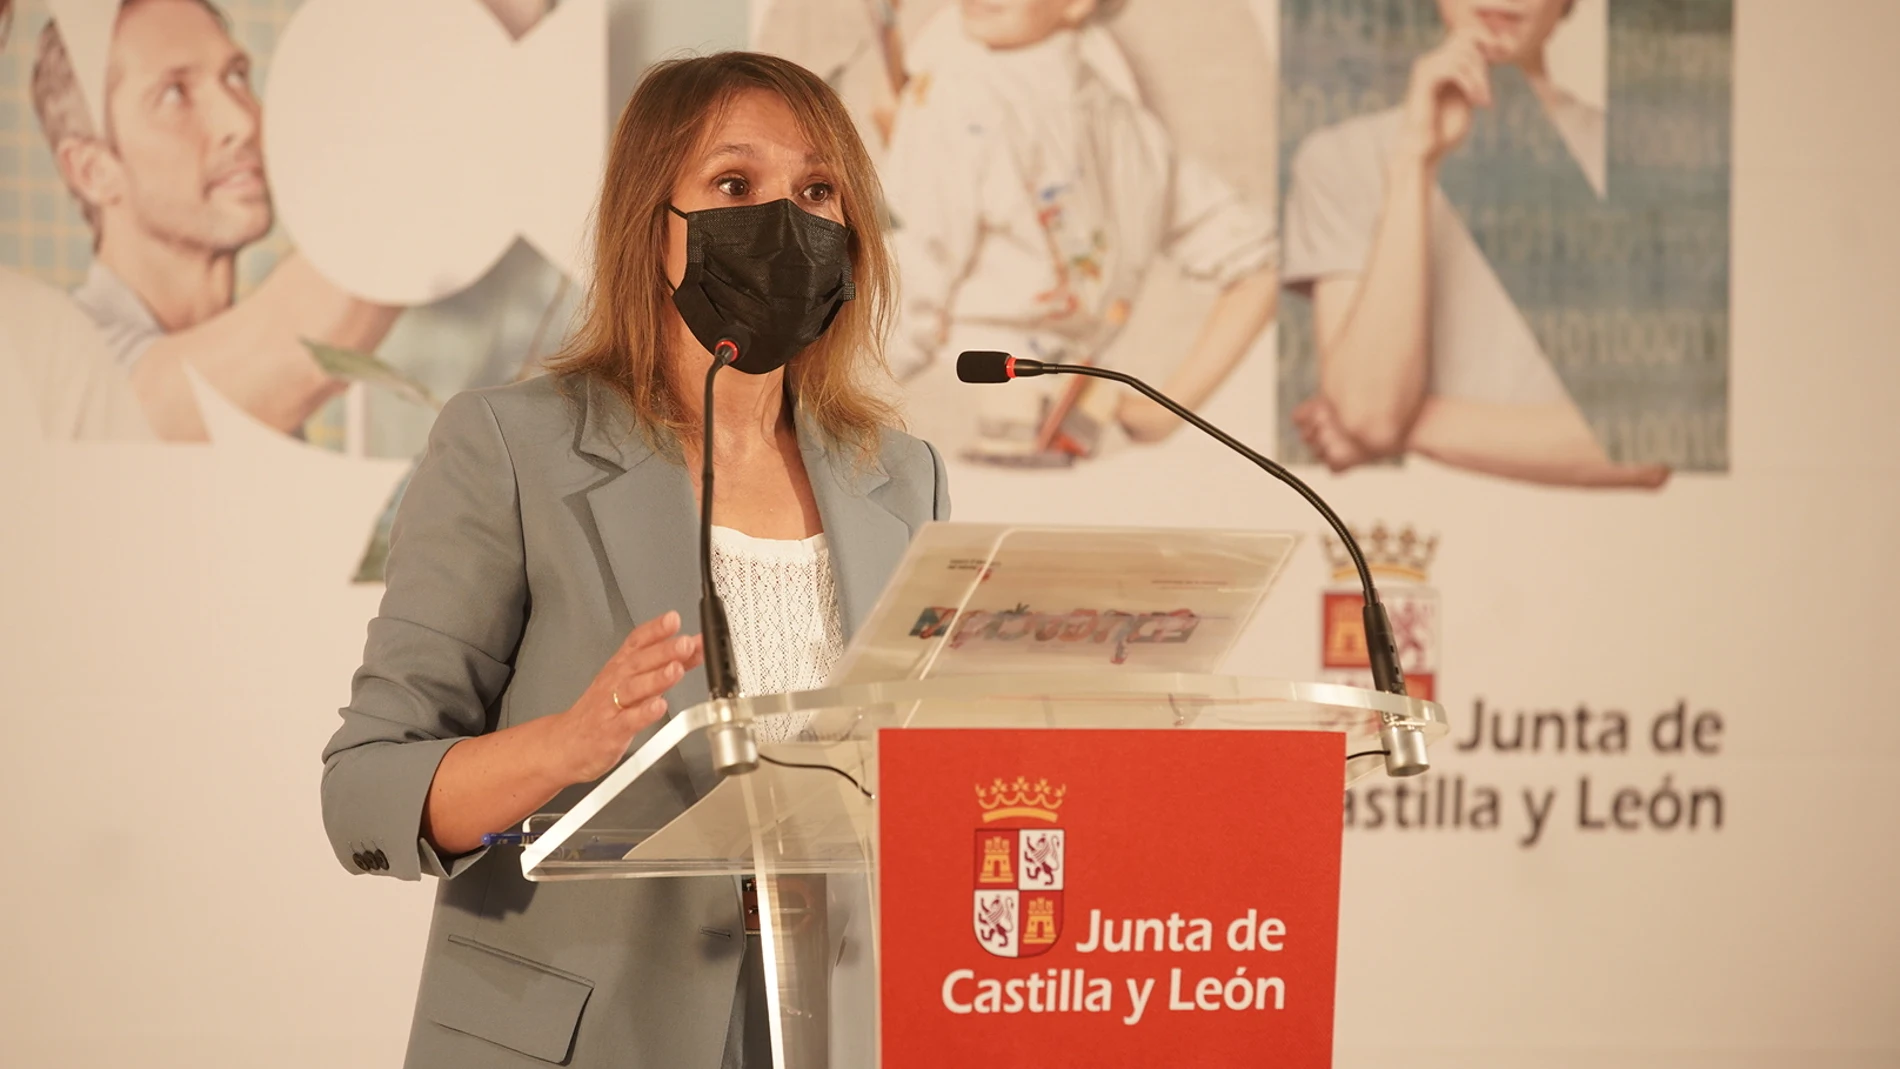 La consejera de Educación, Rocío Lucas, presenta en nuevo curso en Castilla y León